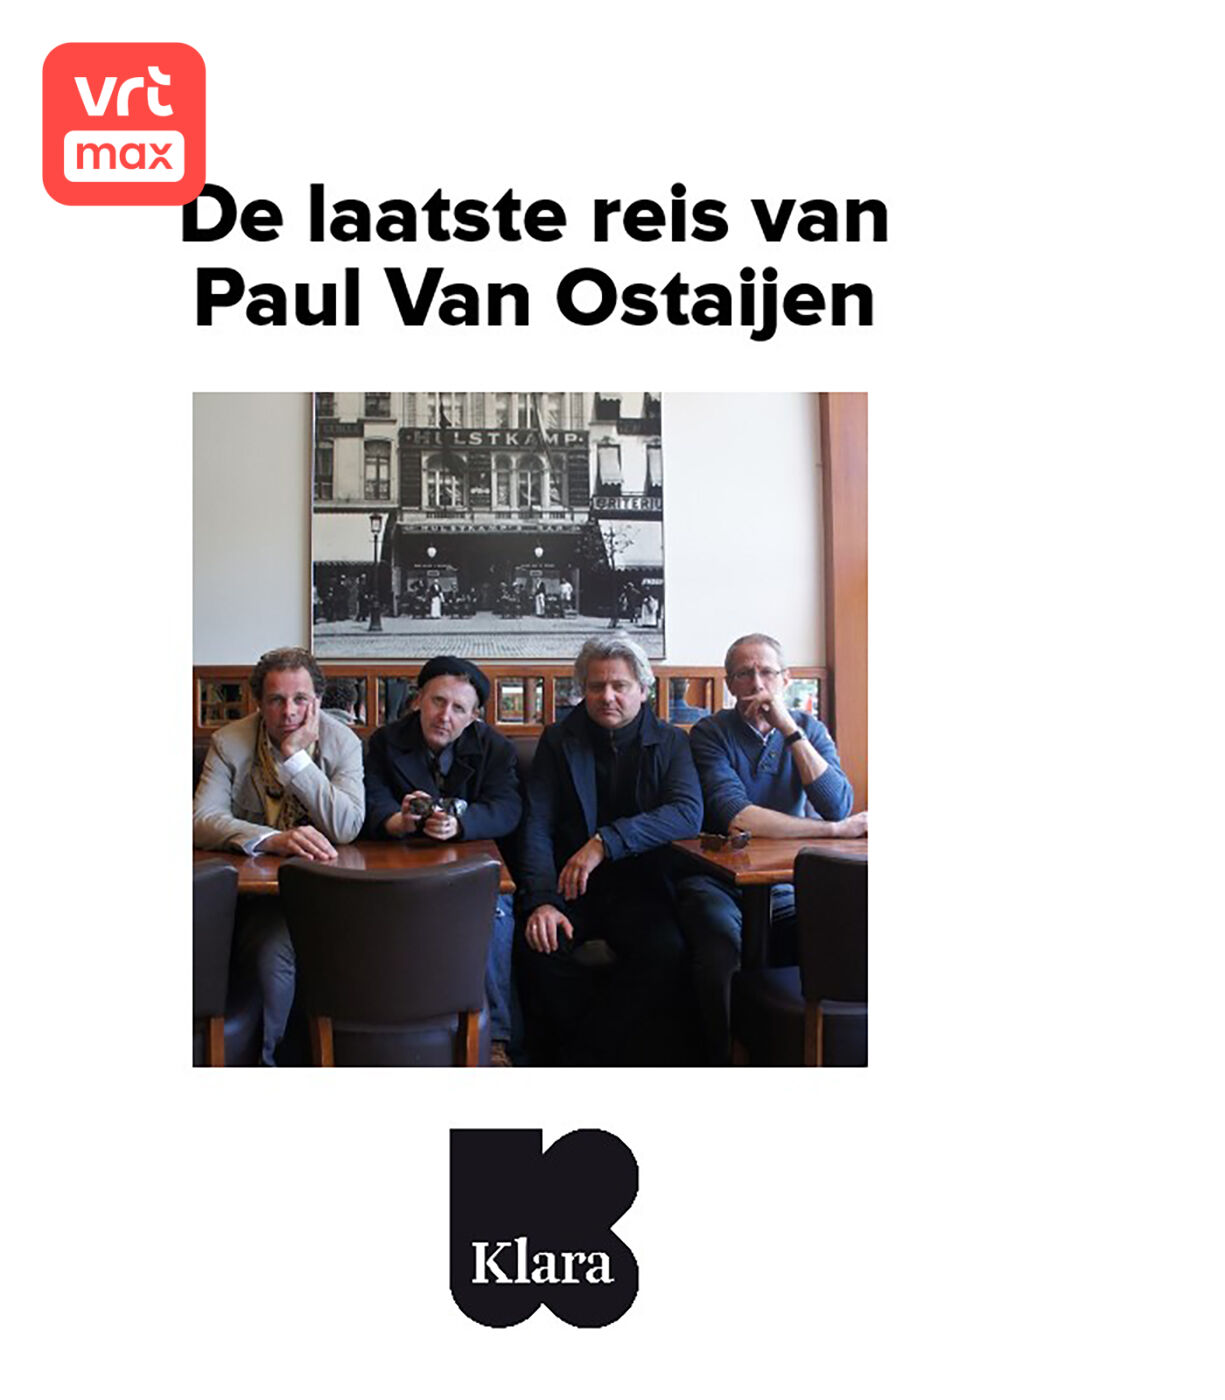 De laatste reis van Paul Van Ostaijen logo